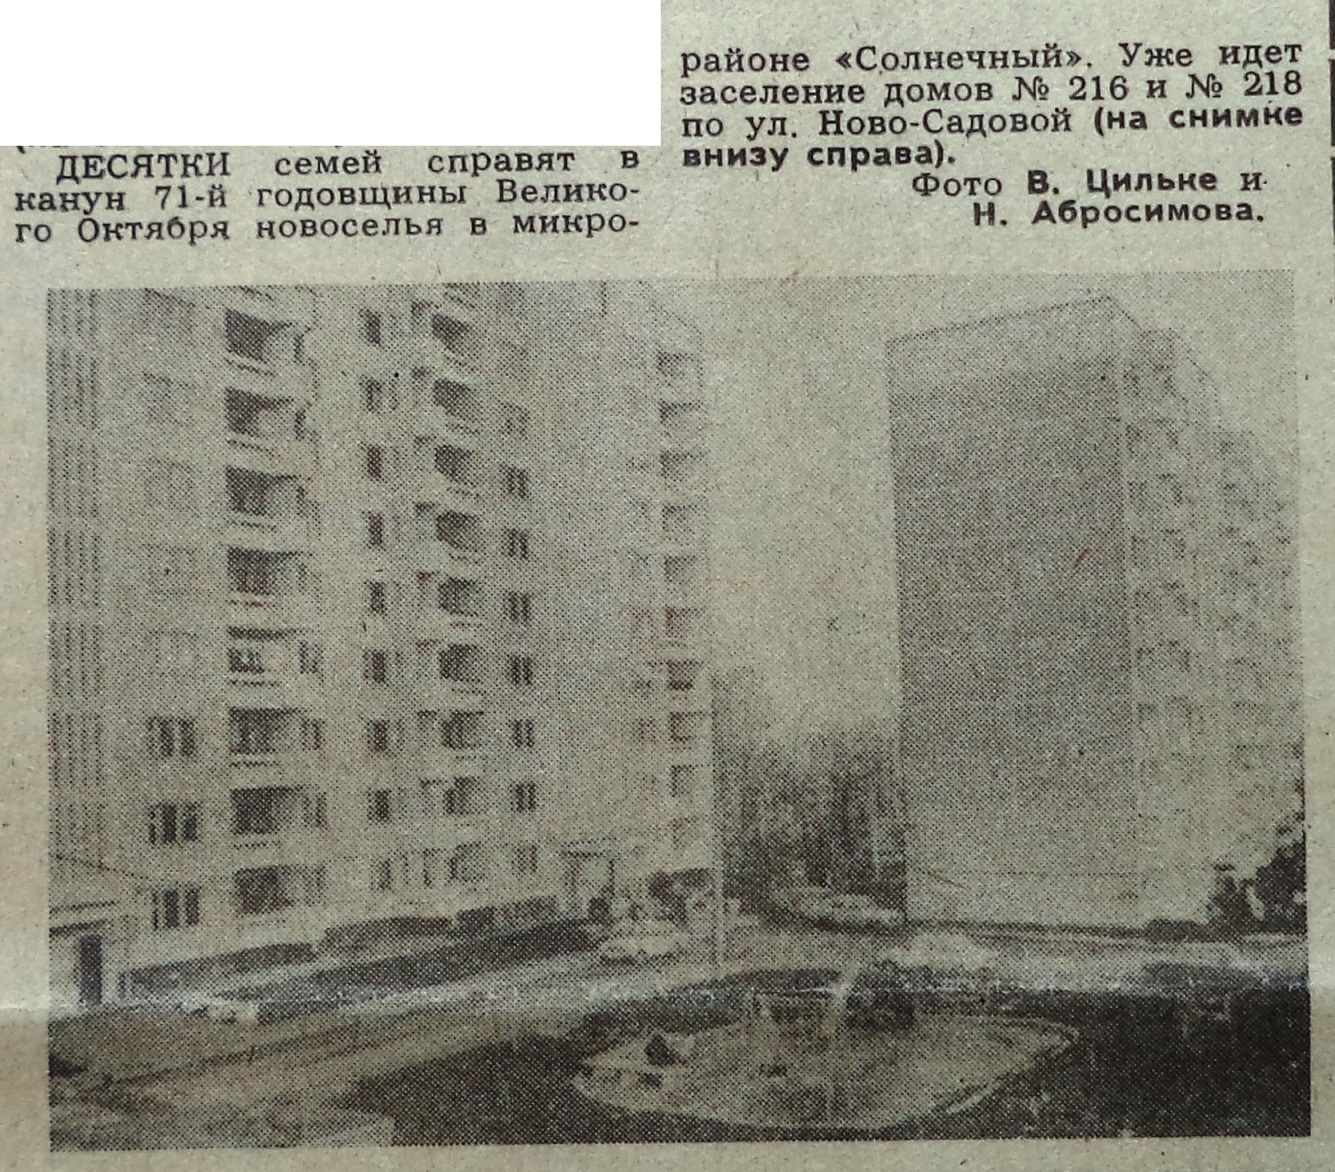 Ново-Садовая-ФОТО-105-ВЗя-1988-11-02-новые дома по НС-216 и НС-218